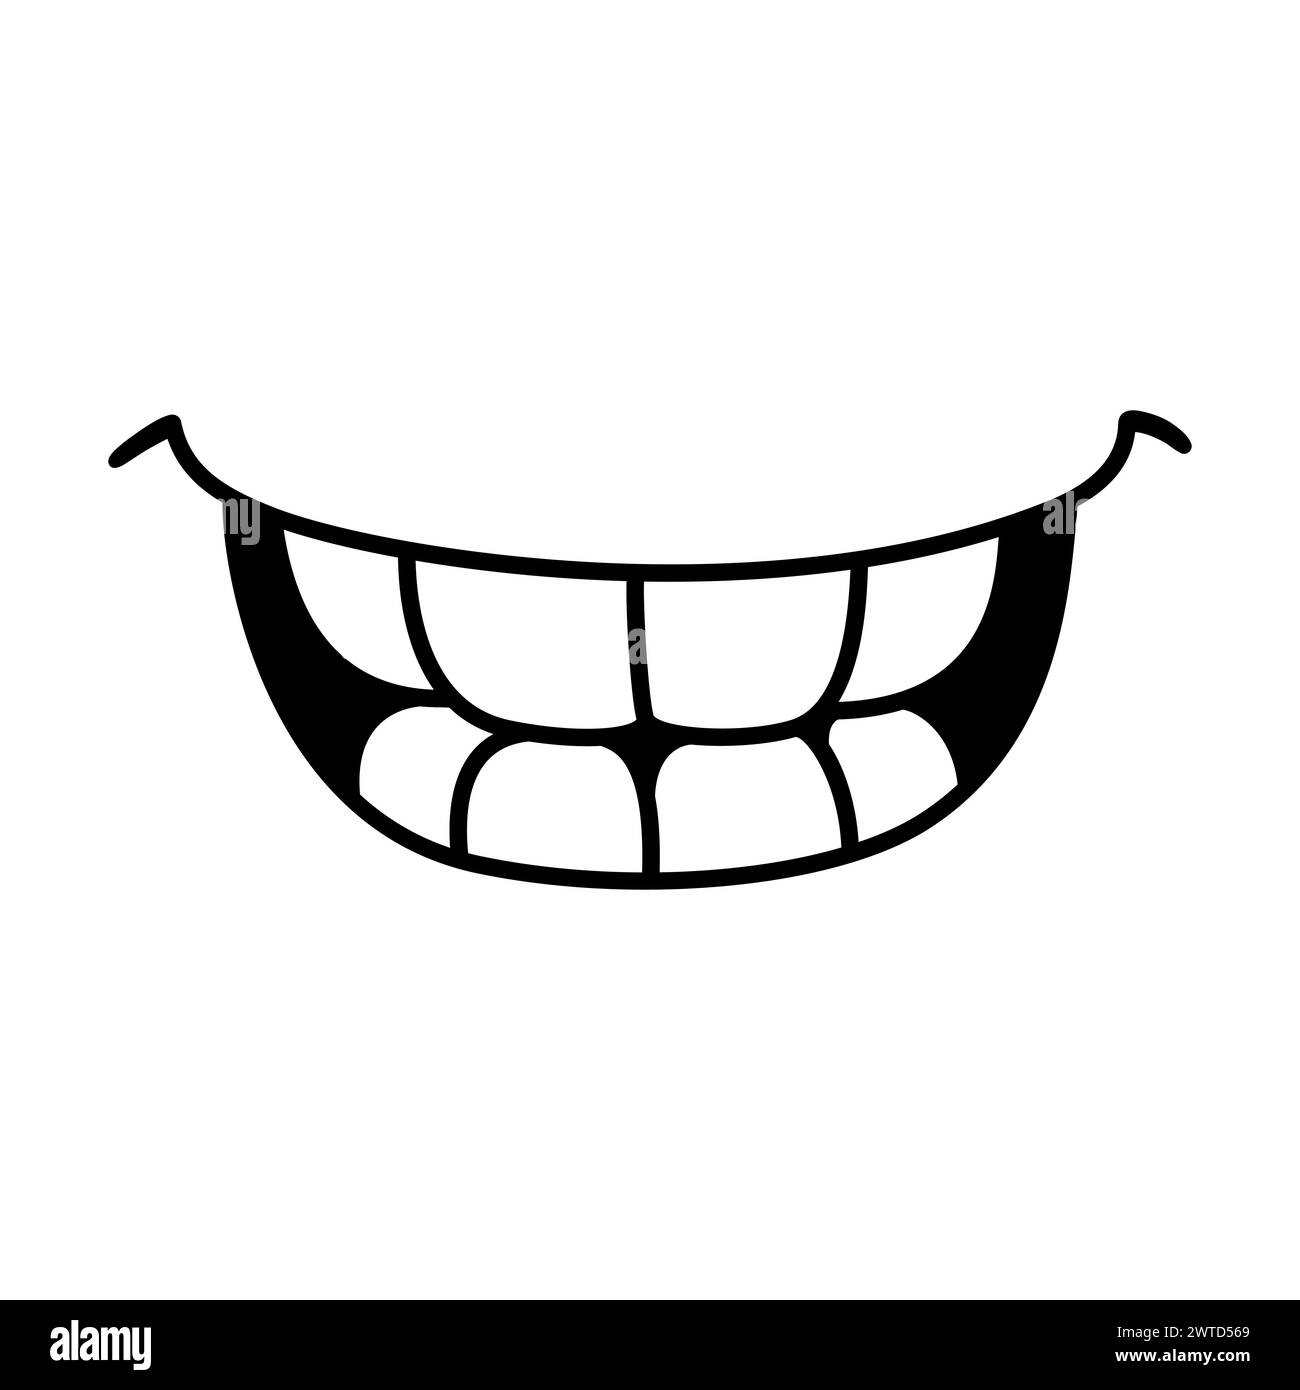 Lächelnder Mund mit Zähnen, einfache Doodle-Zeichnung. Einfaches schwarz-weißes Zeichentricksymbol. Handgezeichnete Vektorgrafik. Stock Vektor